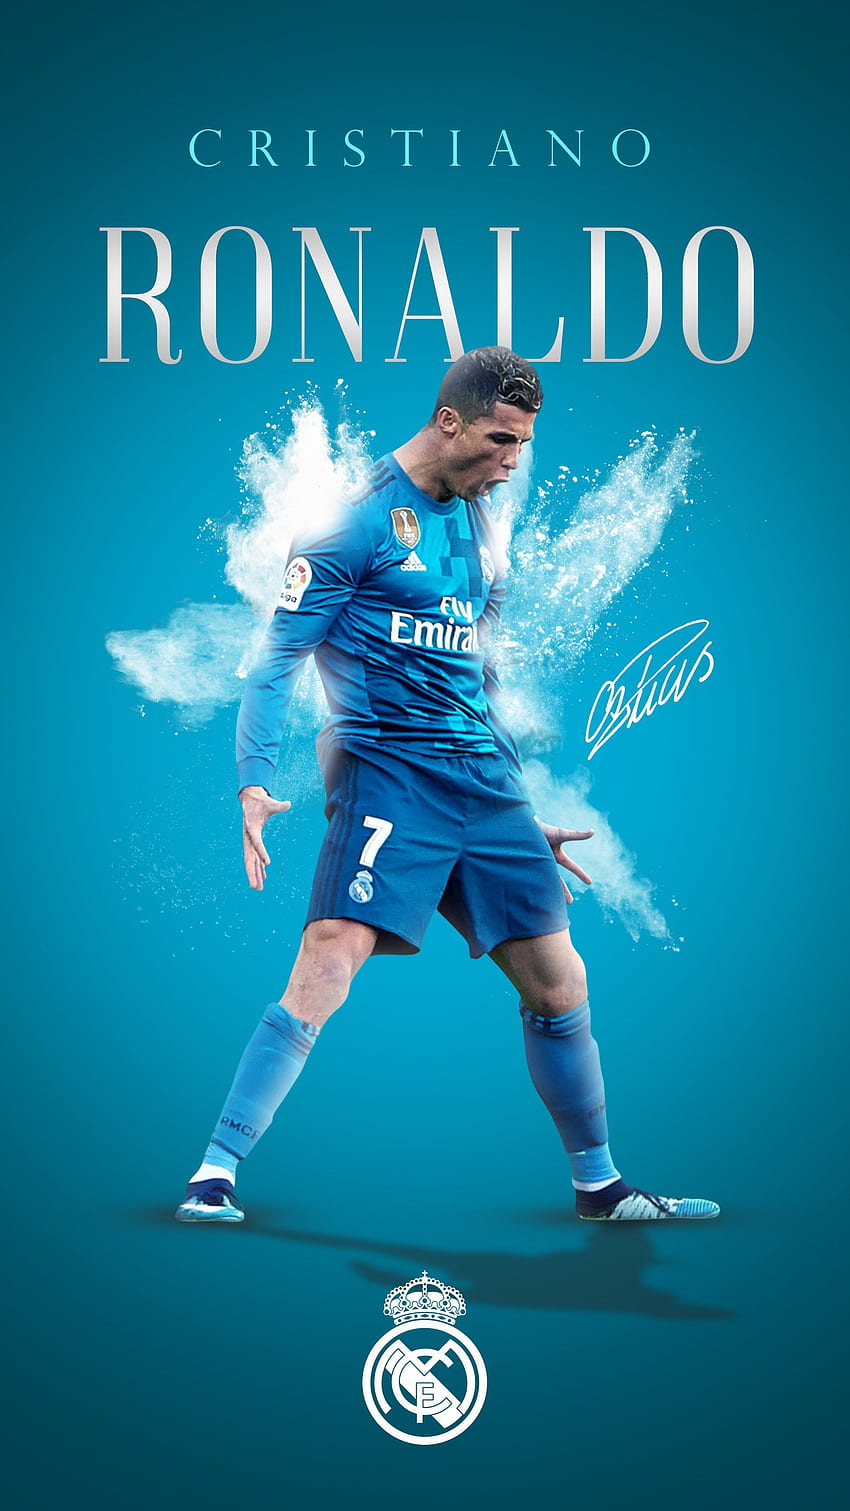 Cristiano Ronaldo Portugal WC 2018 Wallpaper by adi149 on DeviantArt